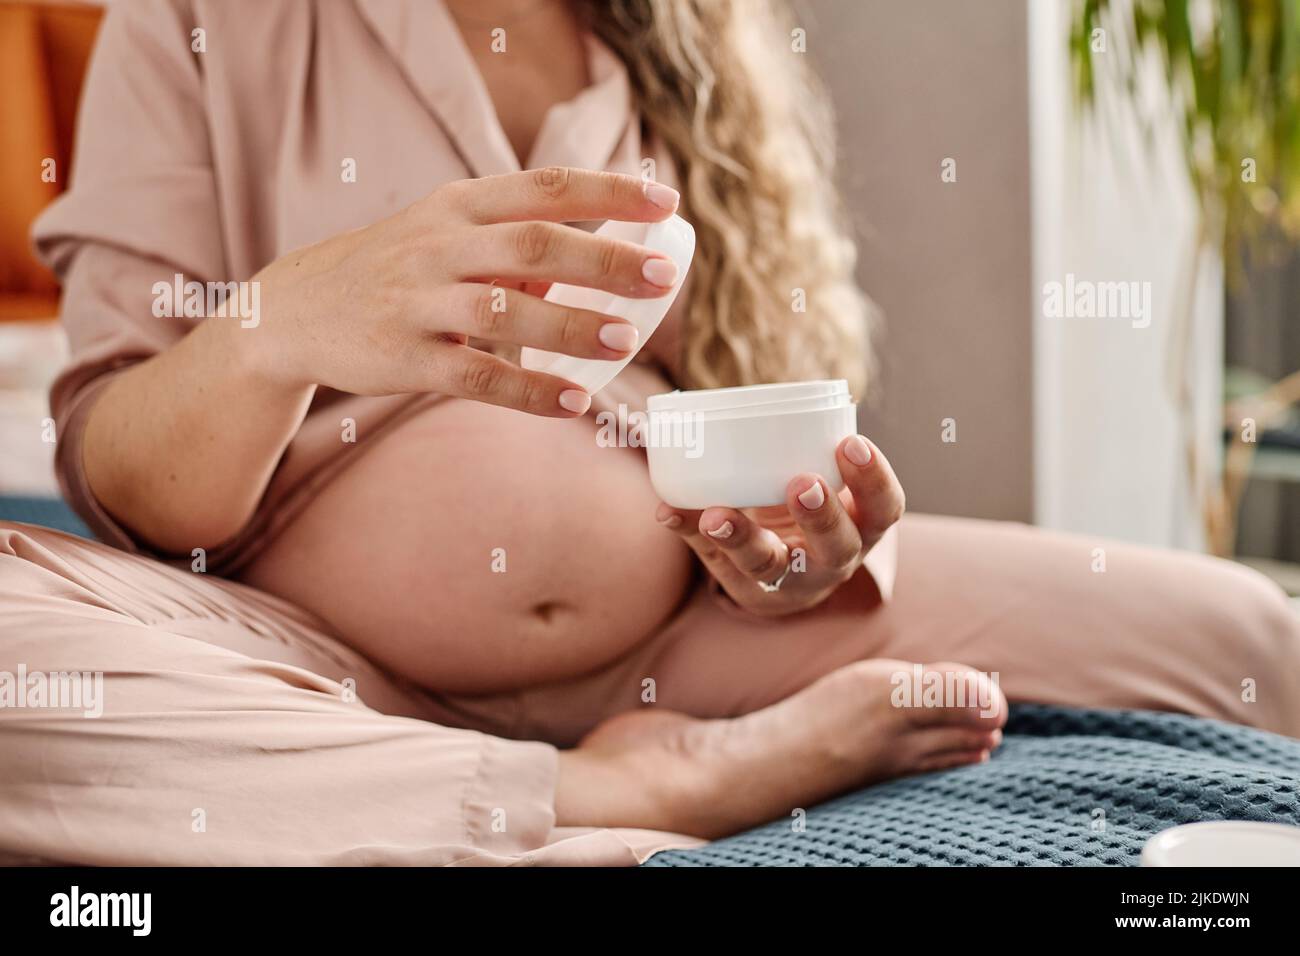 Manos de una joven embarazada sosteniendo un frasco blanco de plástico abierto y su cubierta mientras va a aplicar crema en sus manos o cuerpo Foto de stock